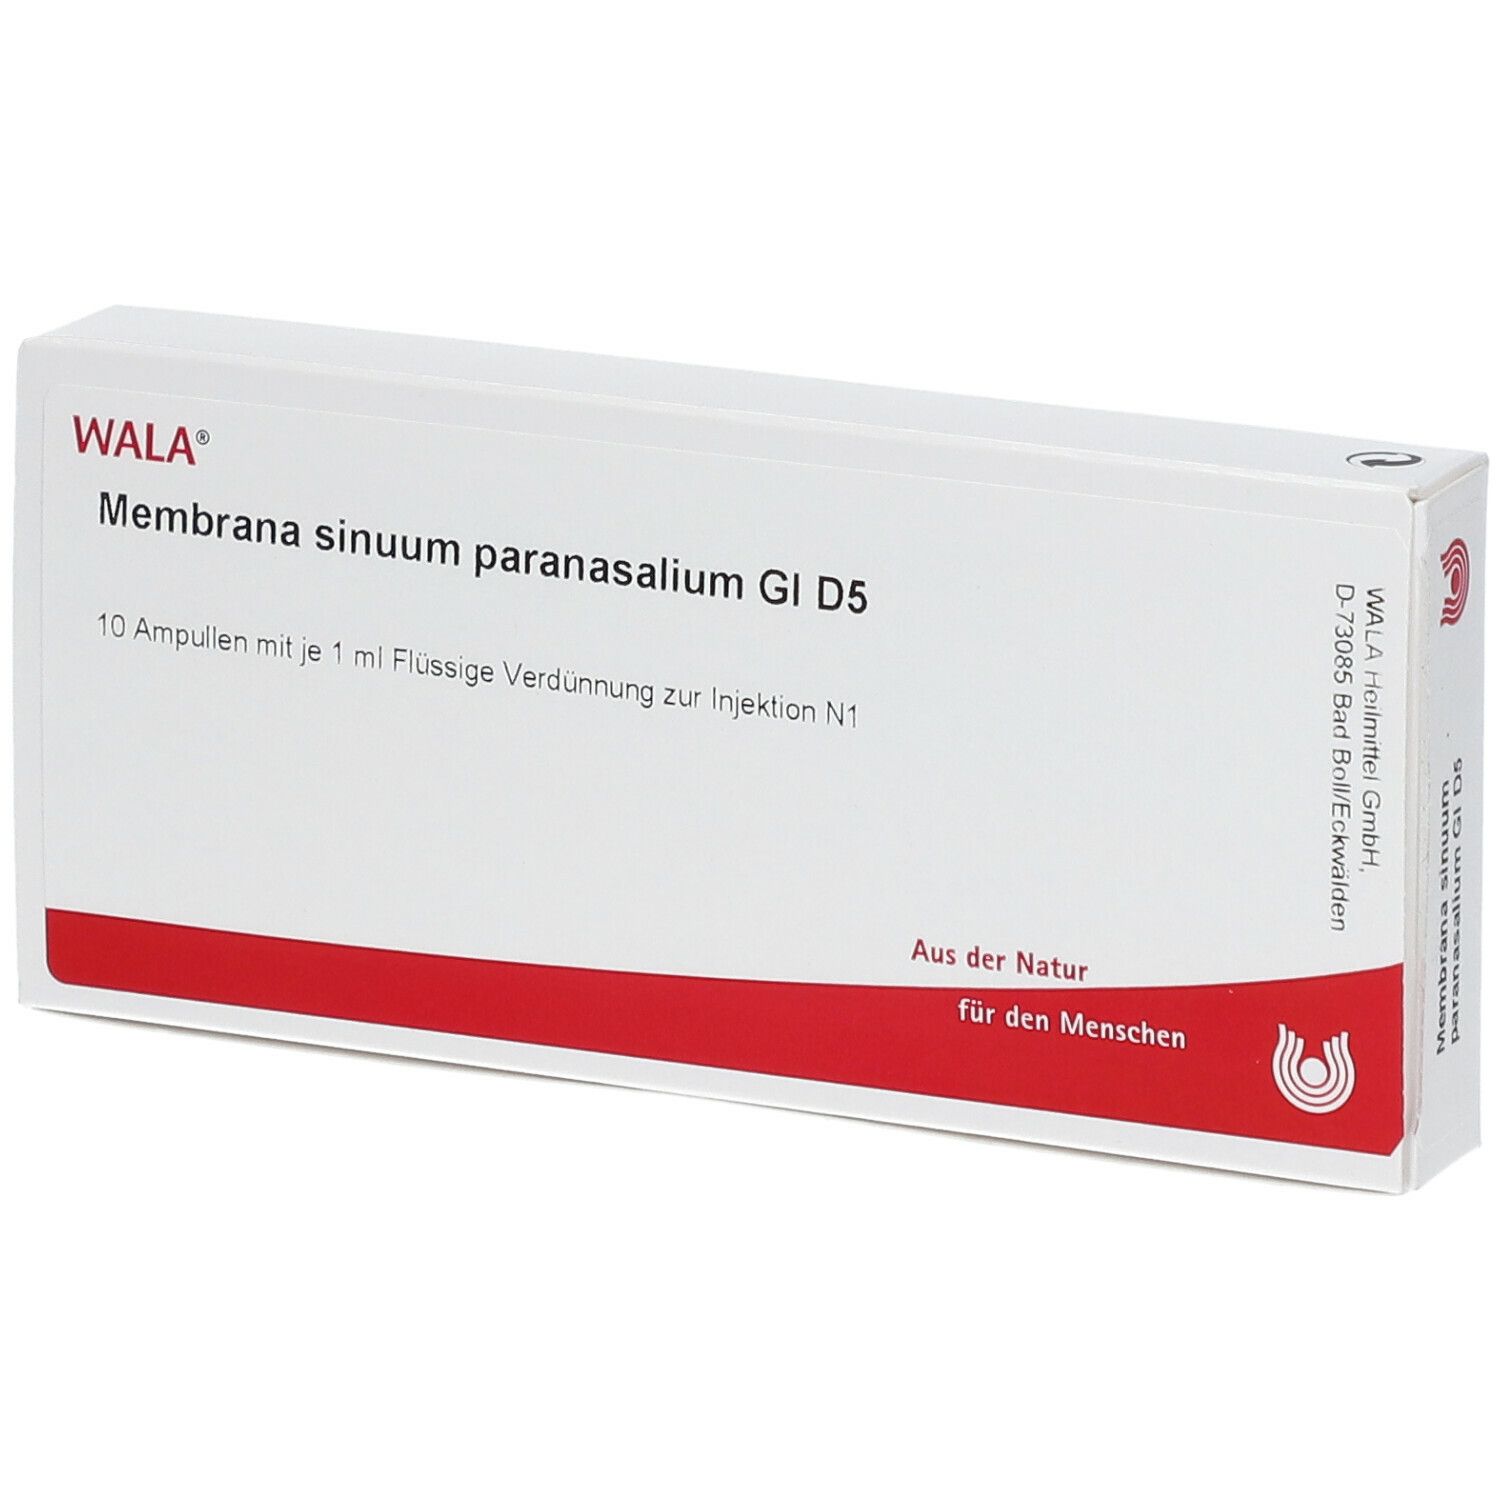 Wala® Membrana sinuum paranasalium Gl D 5